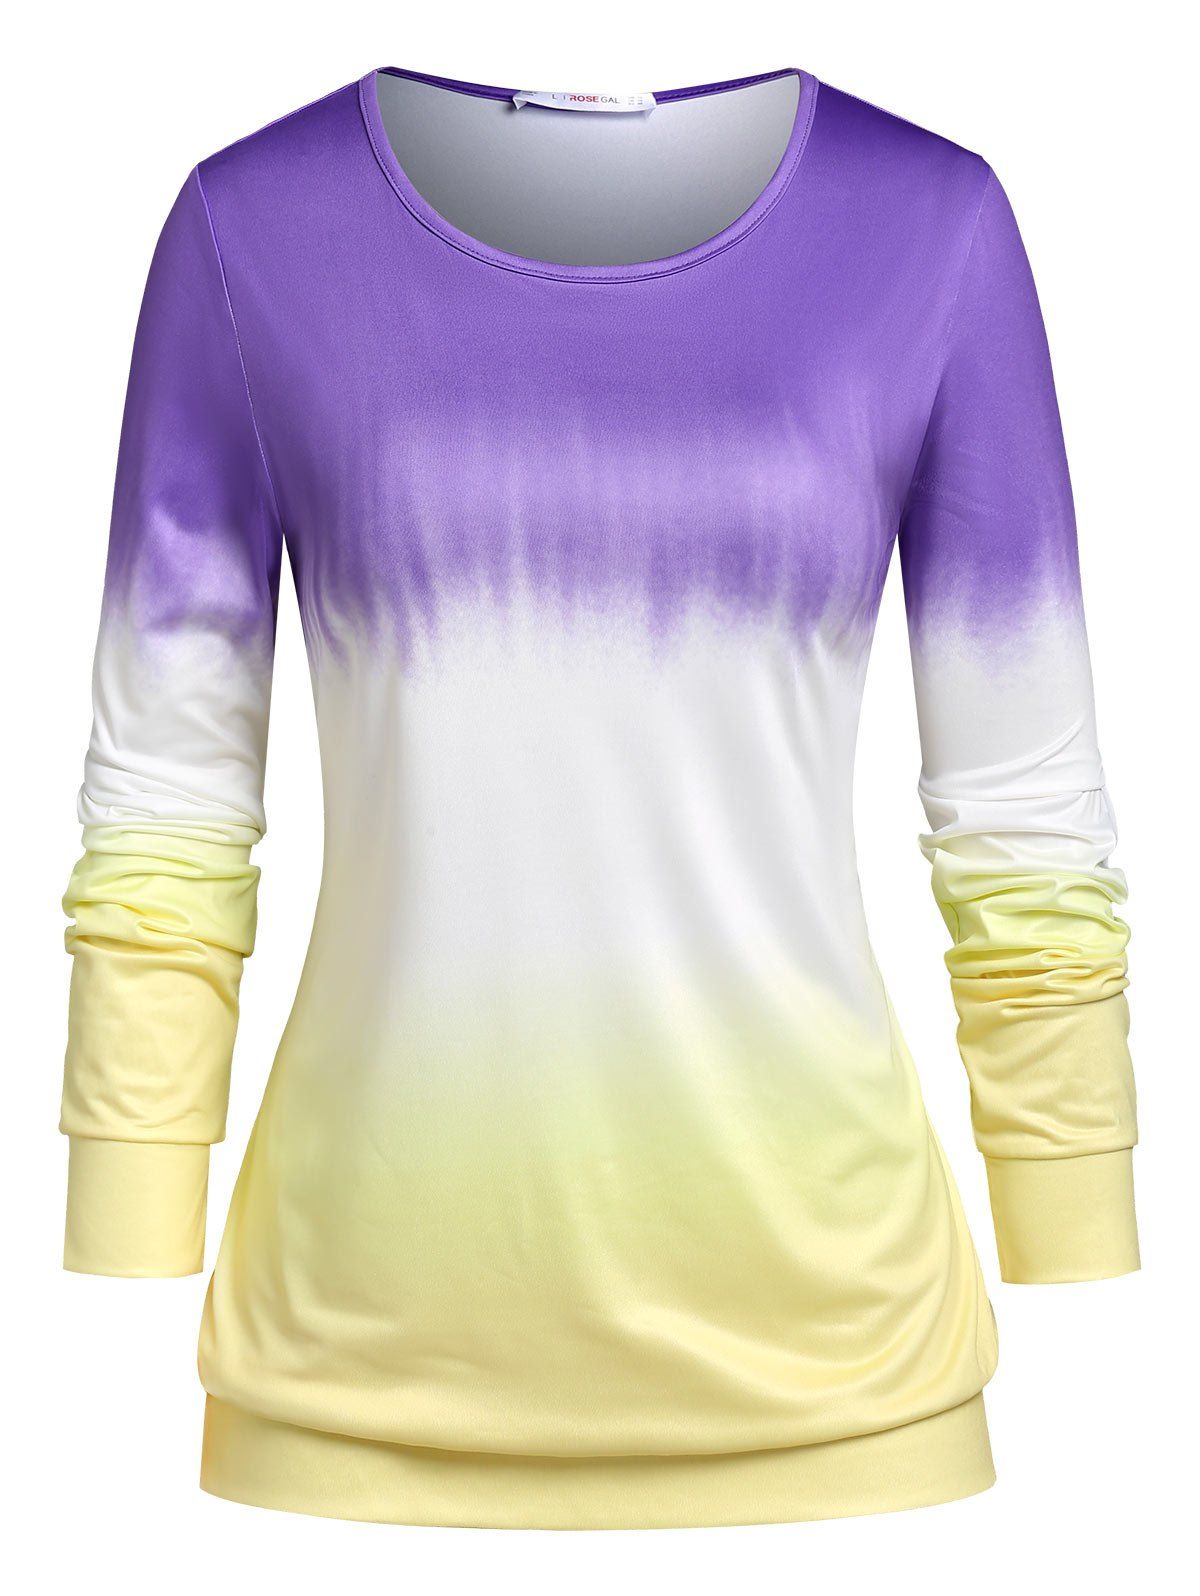 T-shirt en Couleur Ombrée de Grande Taille - multicolor 1X